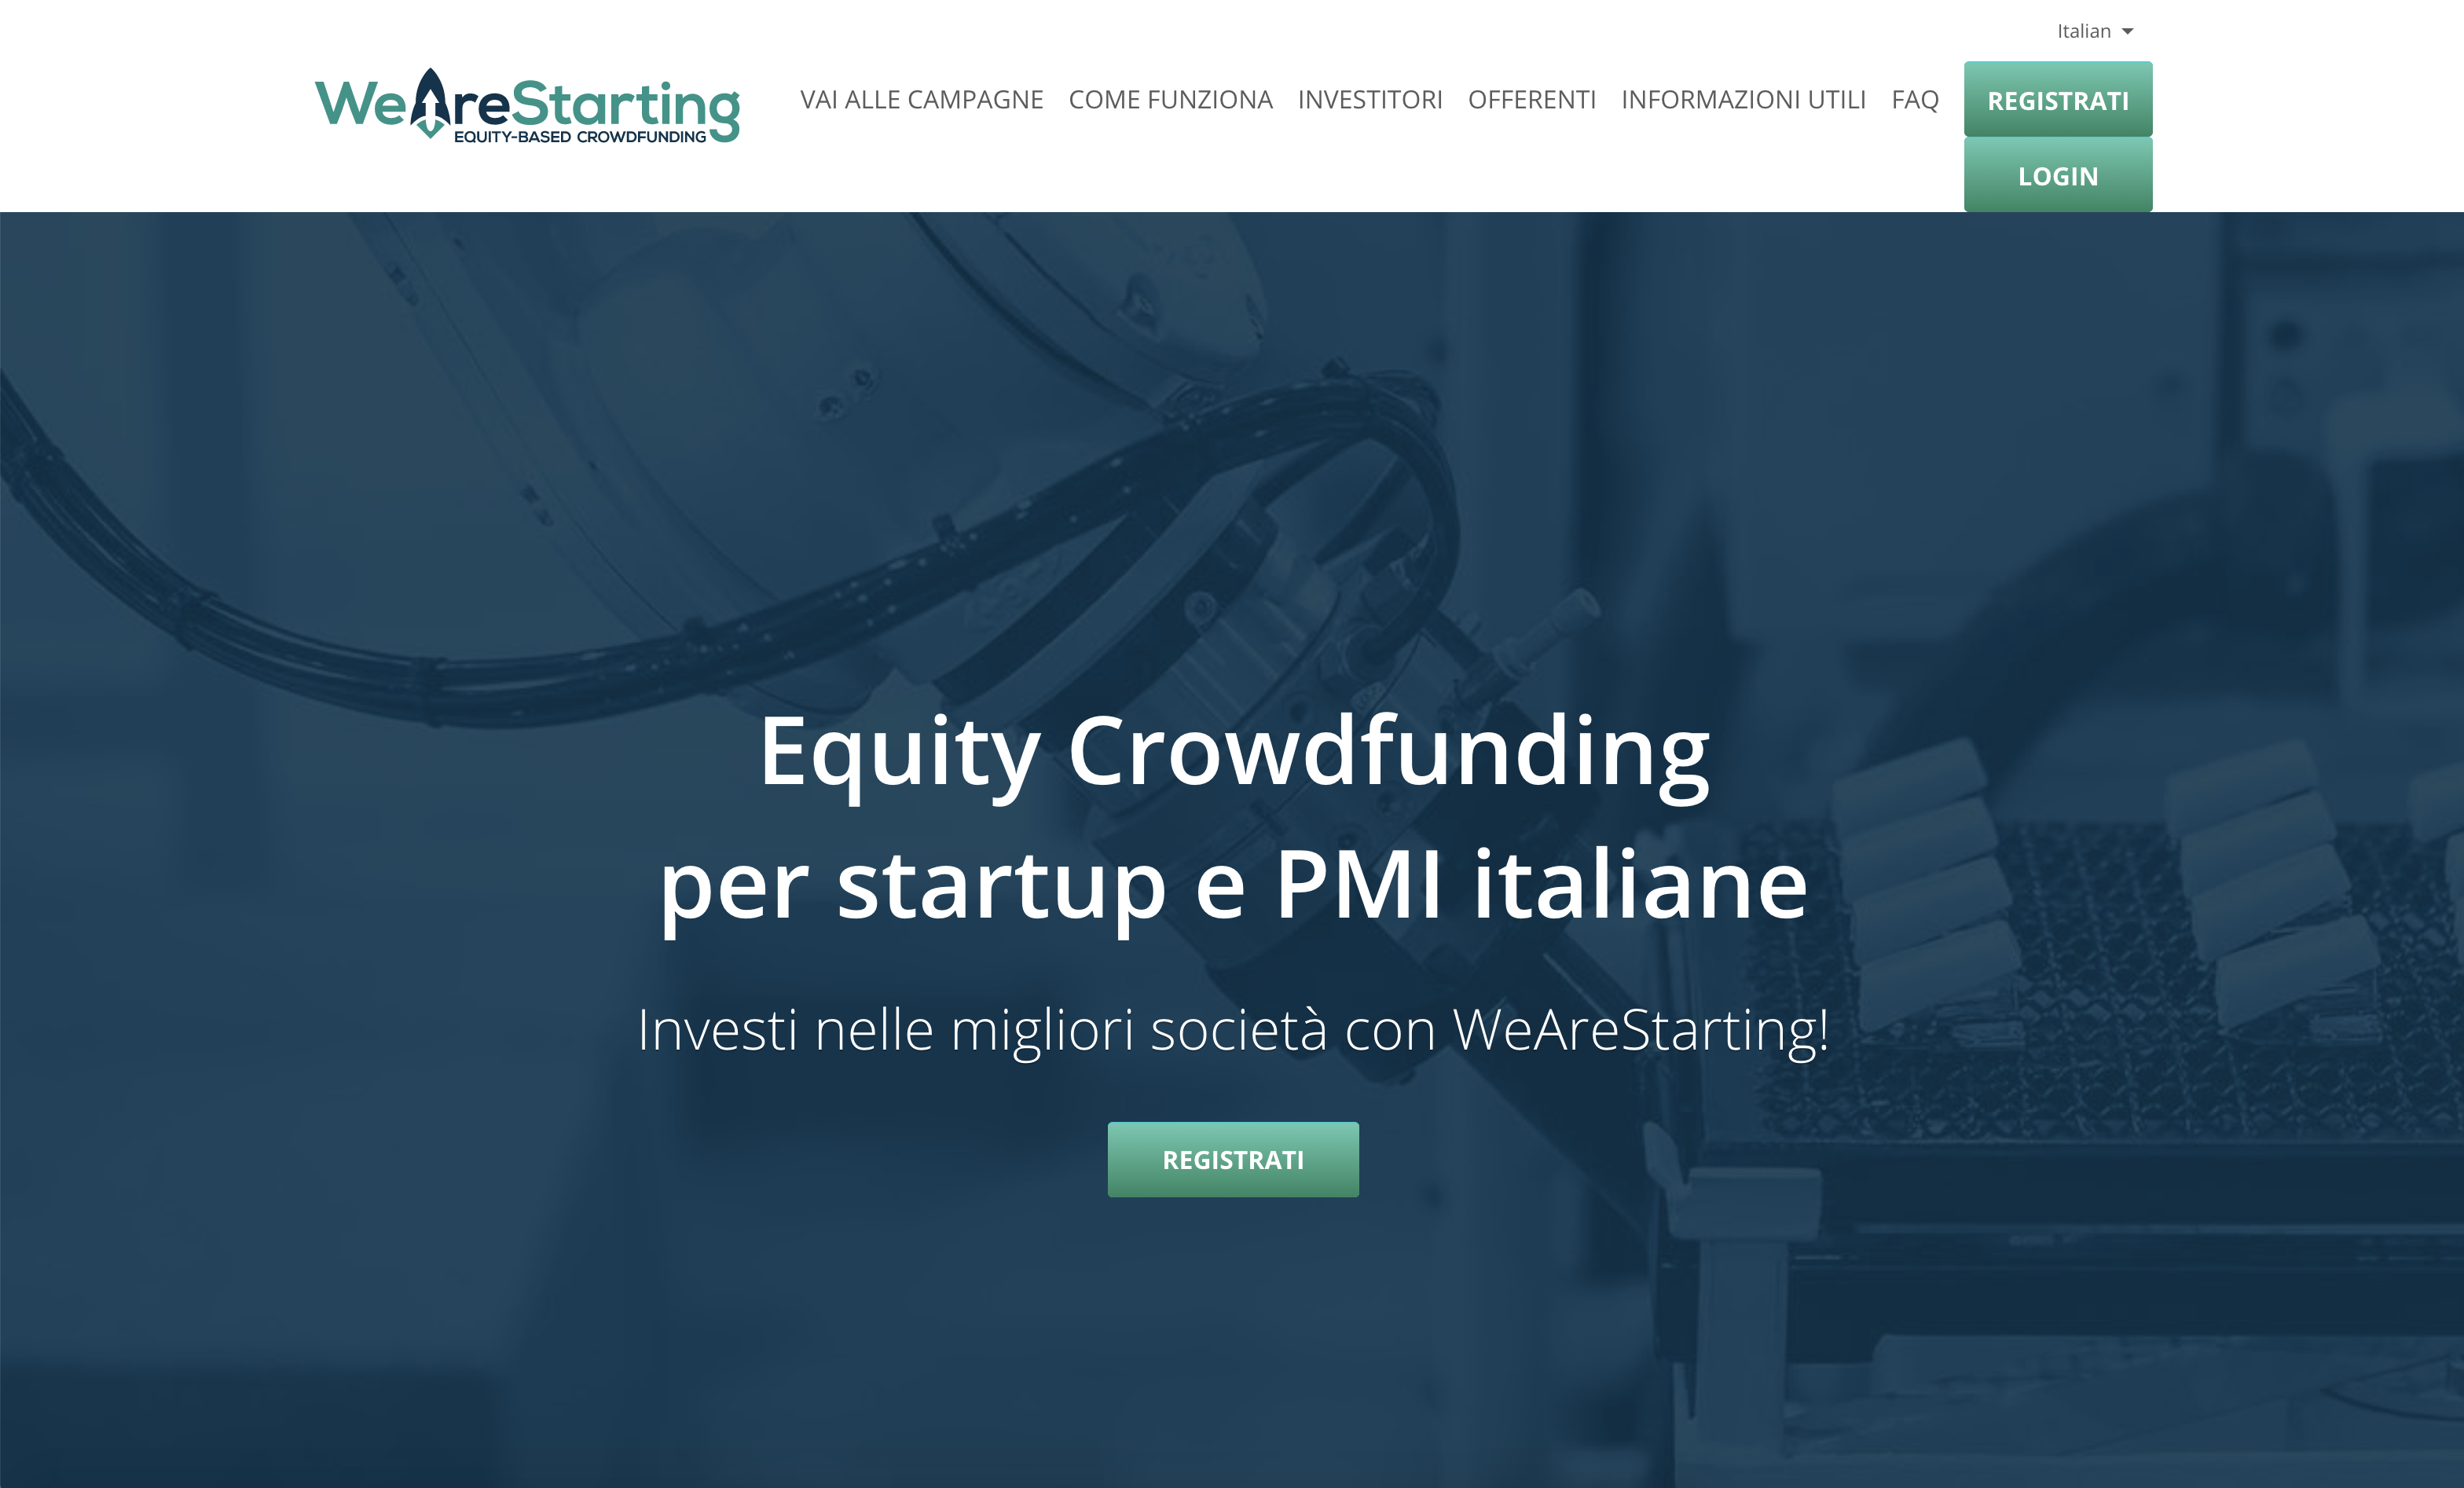 Wearestarting crowdfunding: diventa socio di startup e pmi in pochi minuti. Recensione.